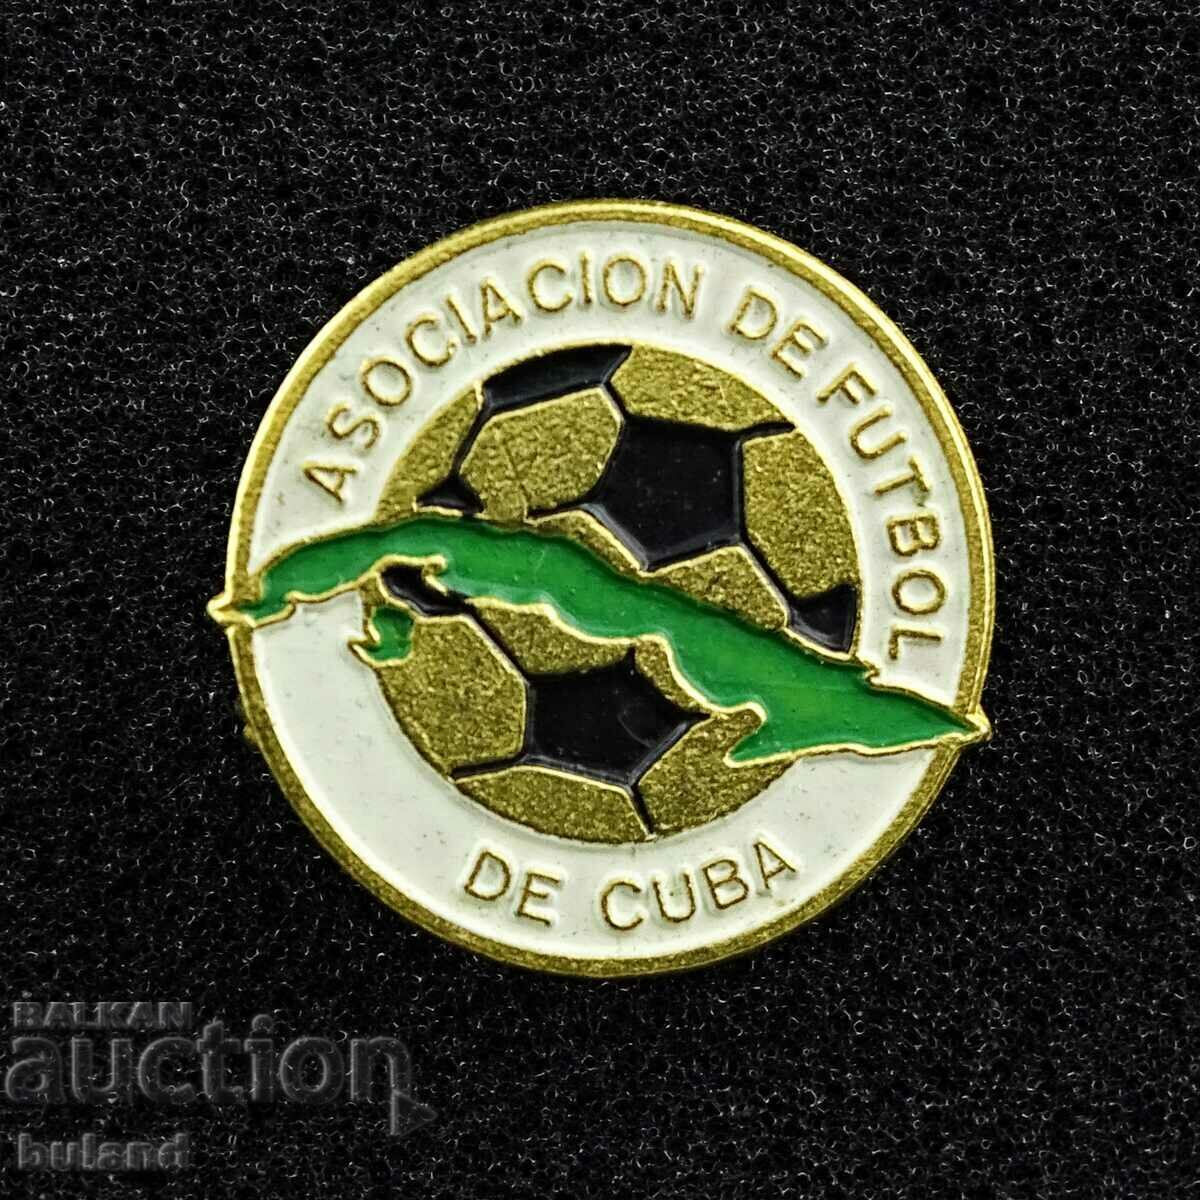 Σήμα Stara Sots Κουβανική Ομοσπονδία Ποδοσφαίρου Κούβας Ποδόσφαιρο